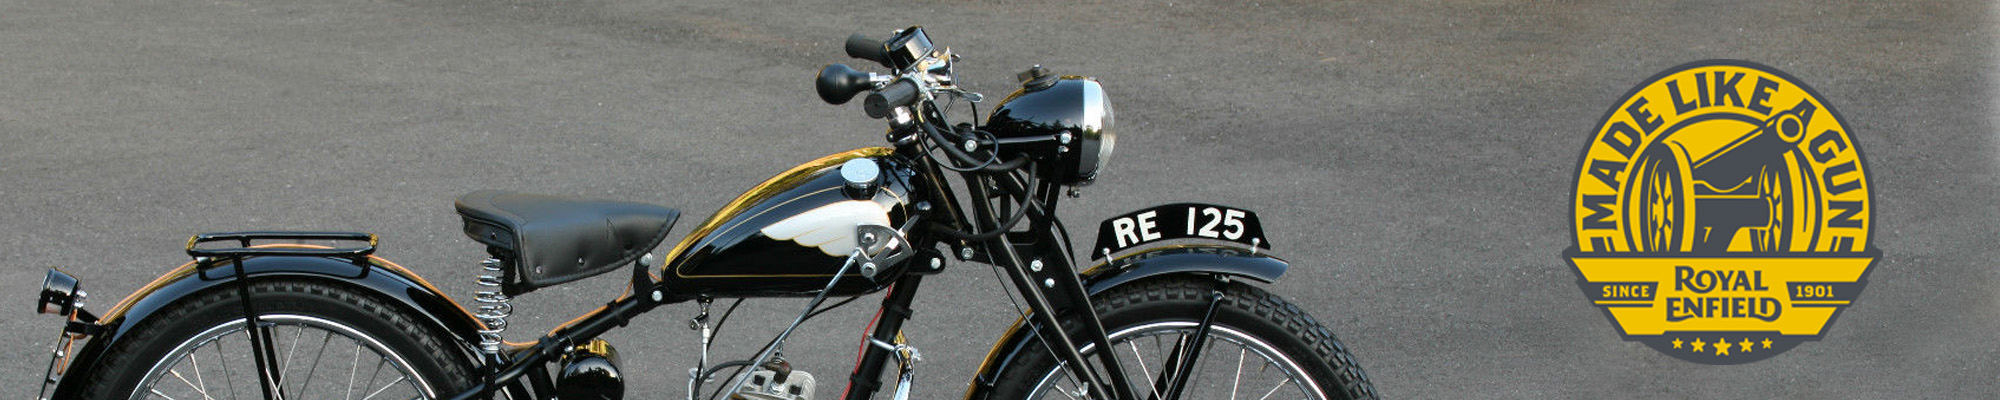 Geschichte der Royal Enfield Motorräder